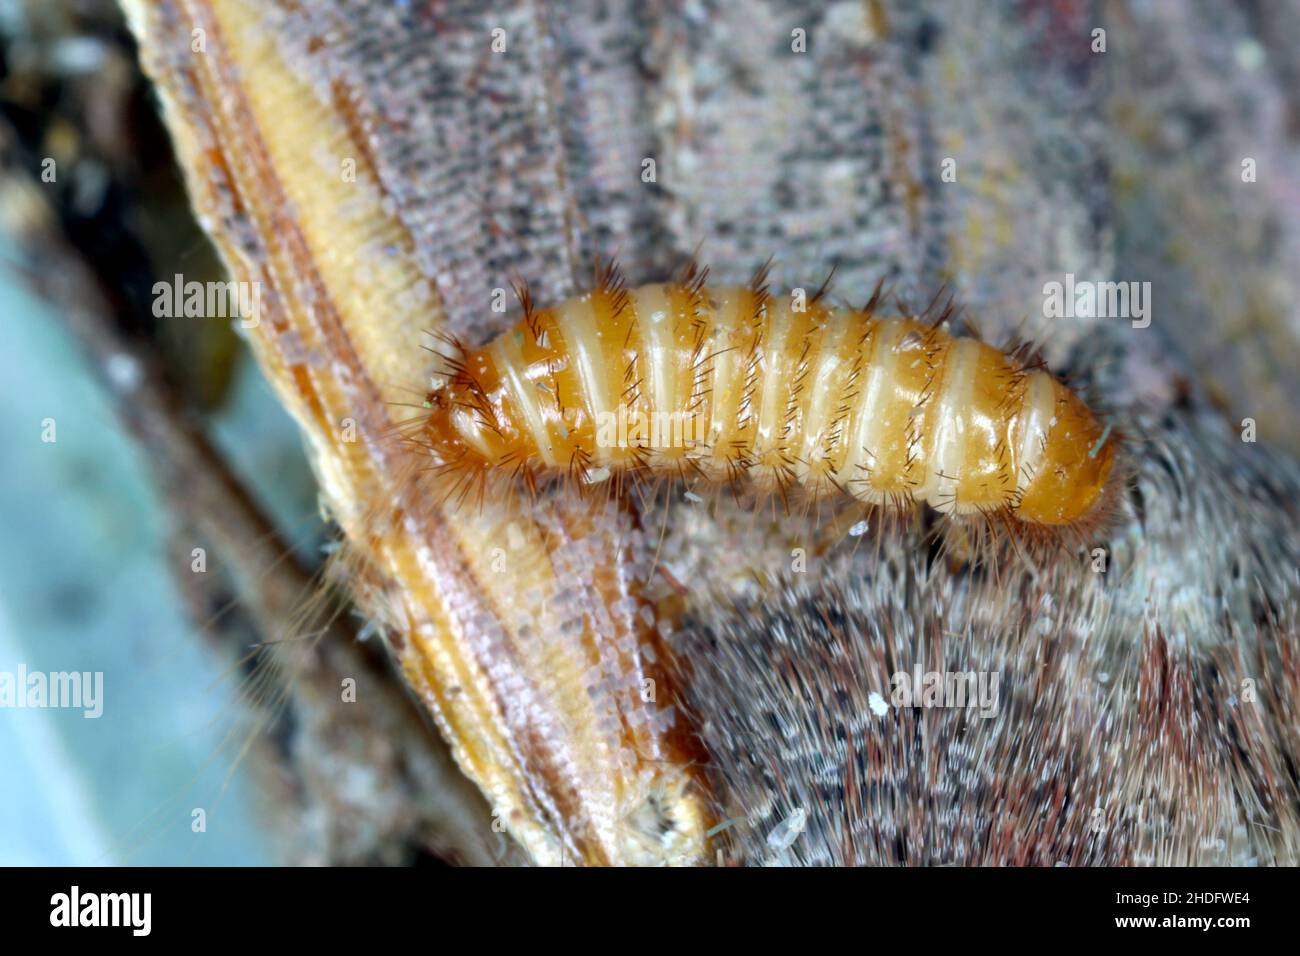 Larve de Trogoderma angustum sur des espèces de dermatidae envahissantes de papillons morts en Europe Banque D'Images